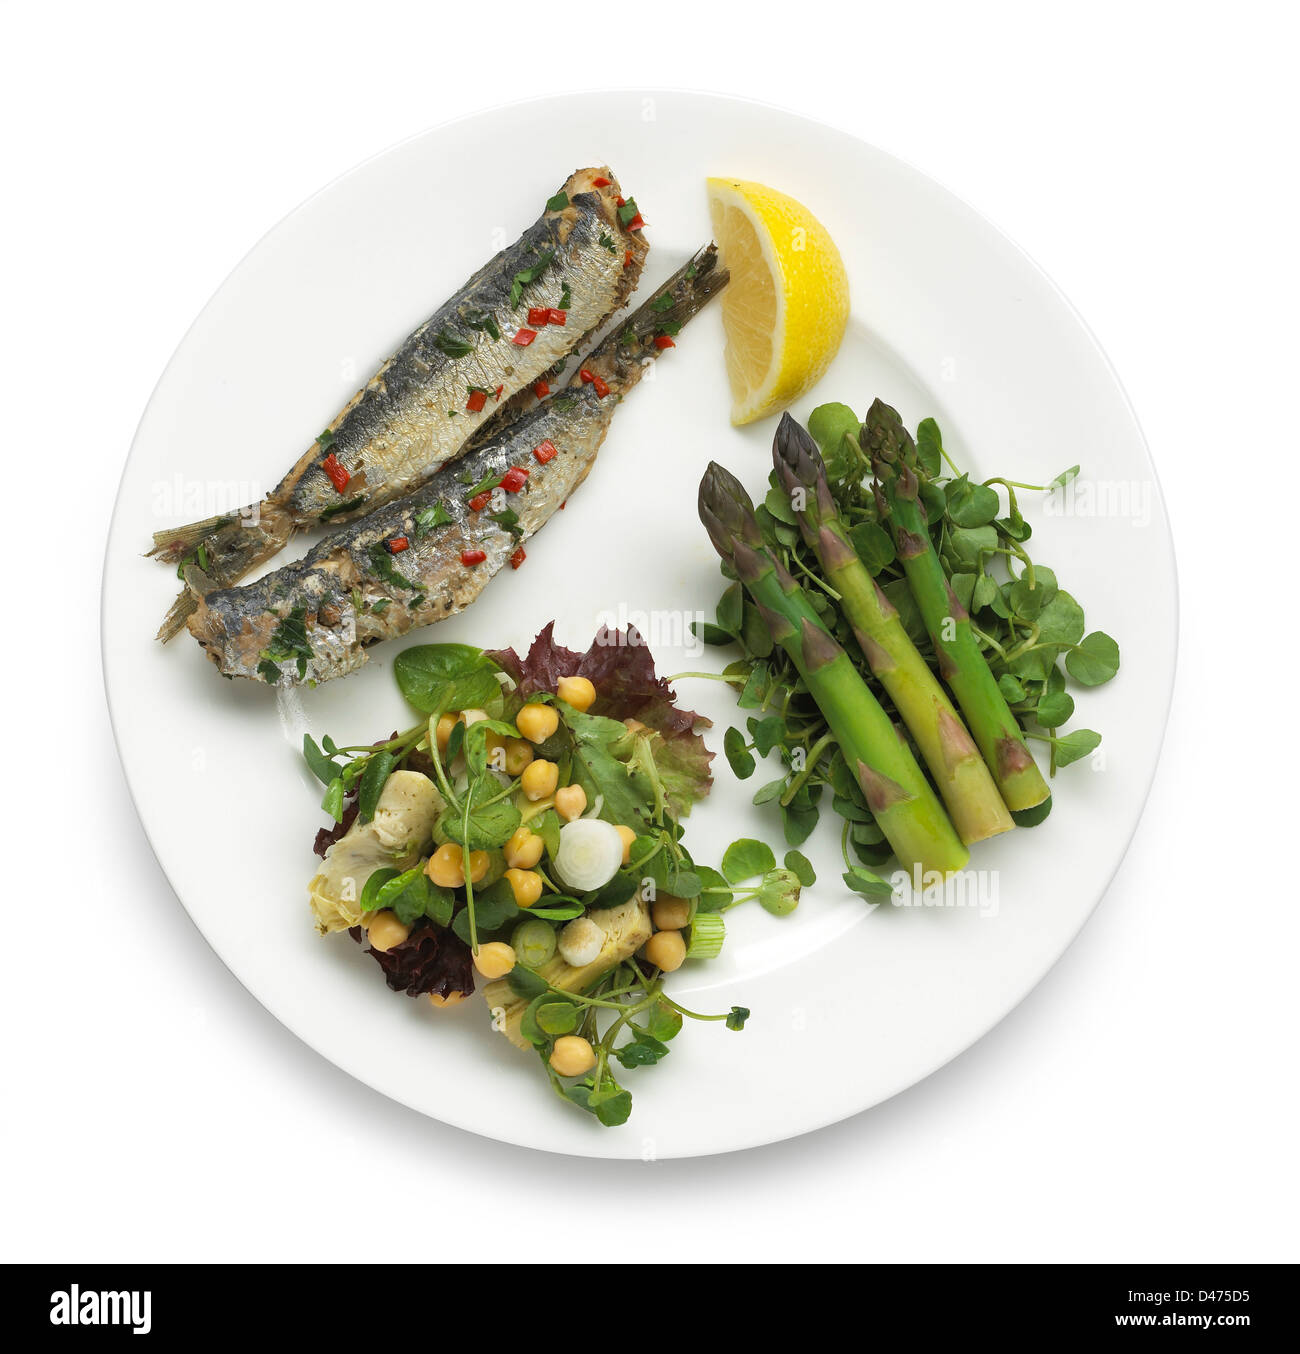 Plat de poisson salade aux asperges et au citron Banque D'Images